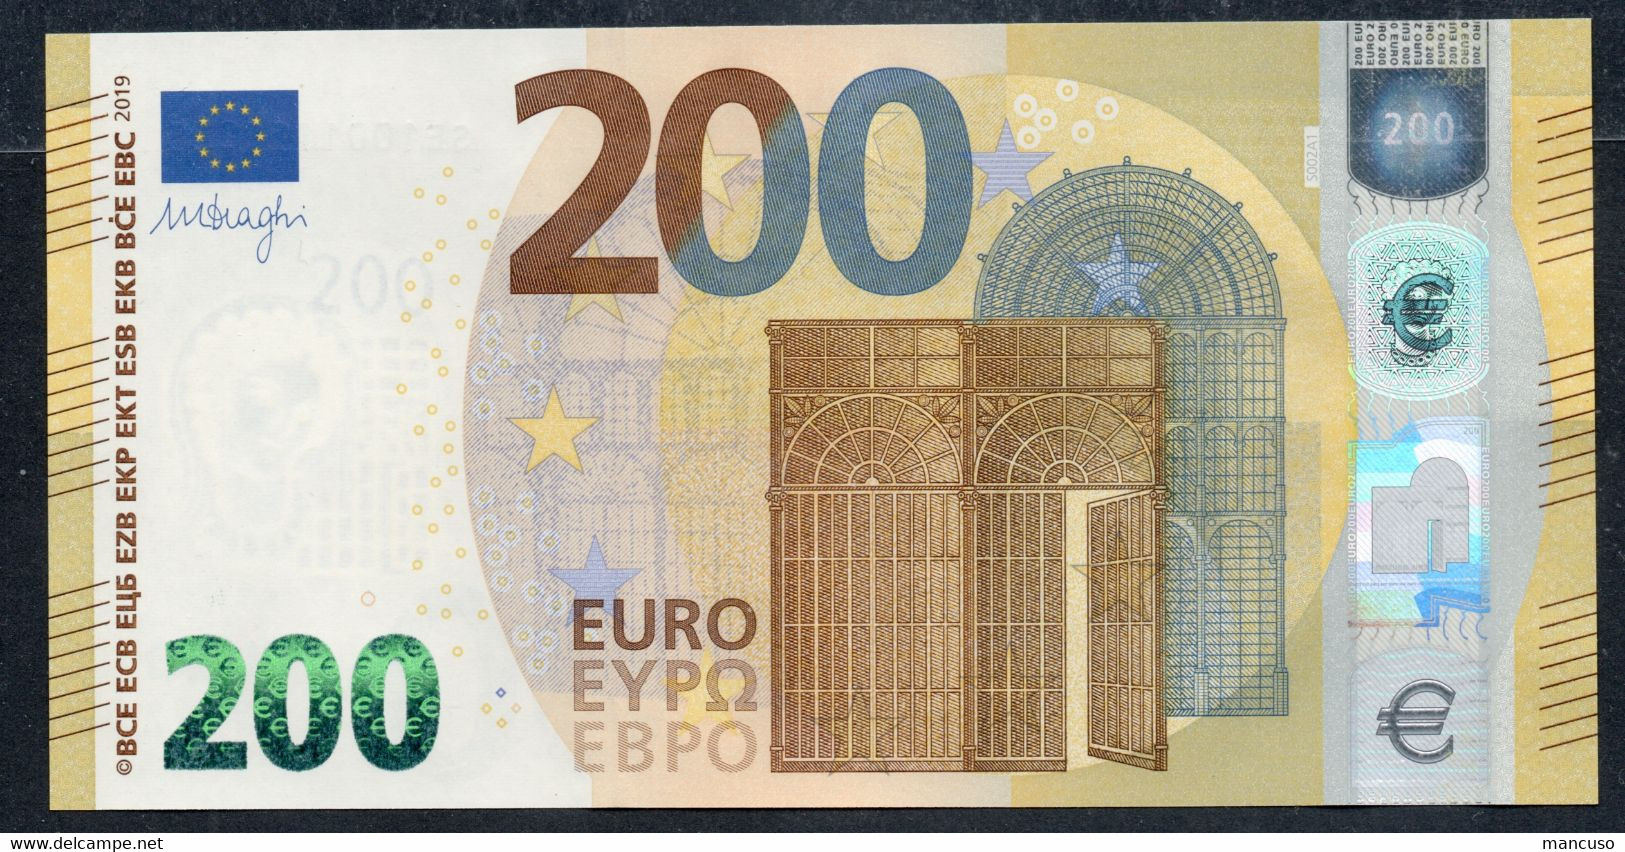 ITALIA € 200 SE S002 A1  "00"  DRAGHI   UNC - 200 Euro